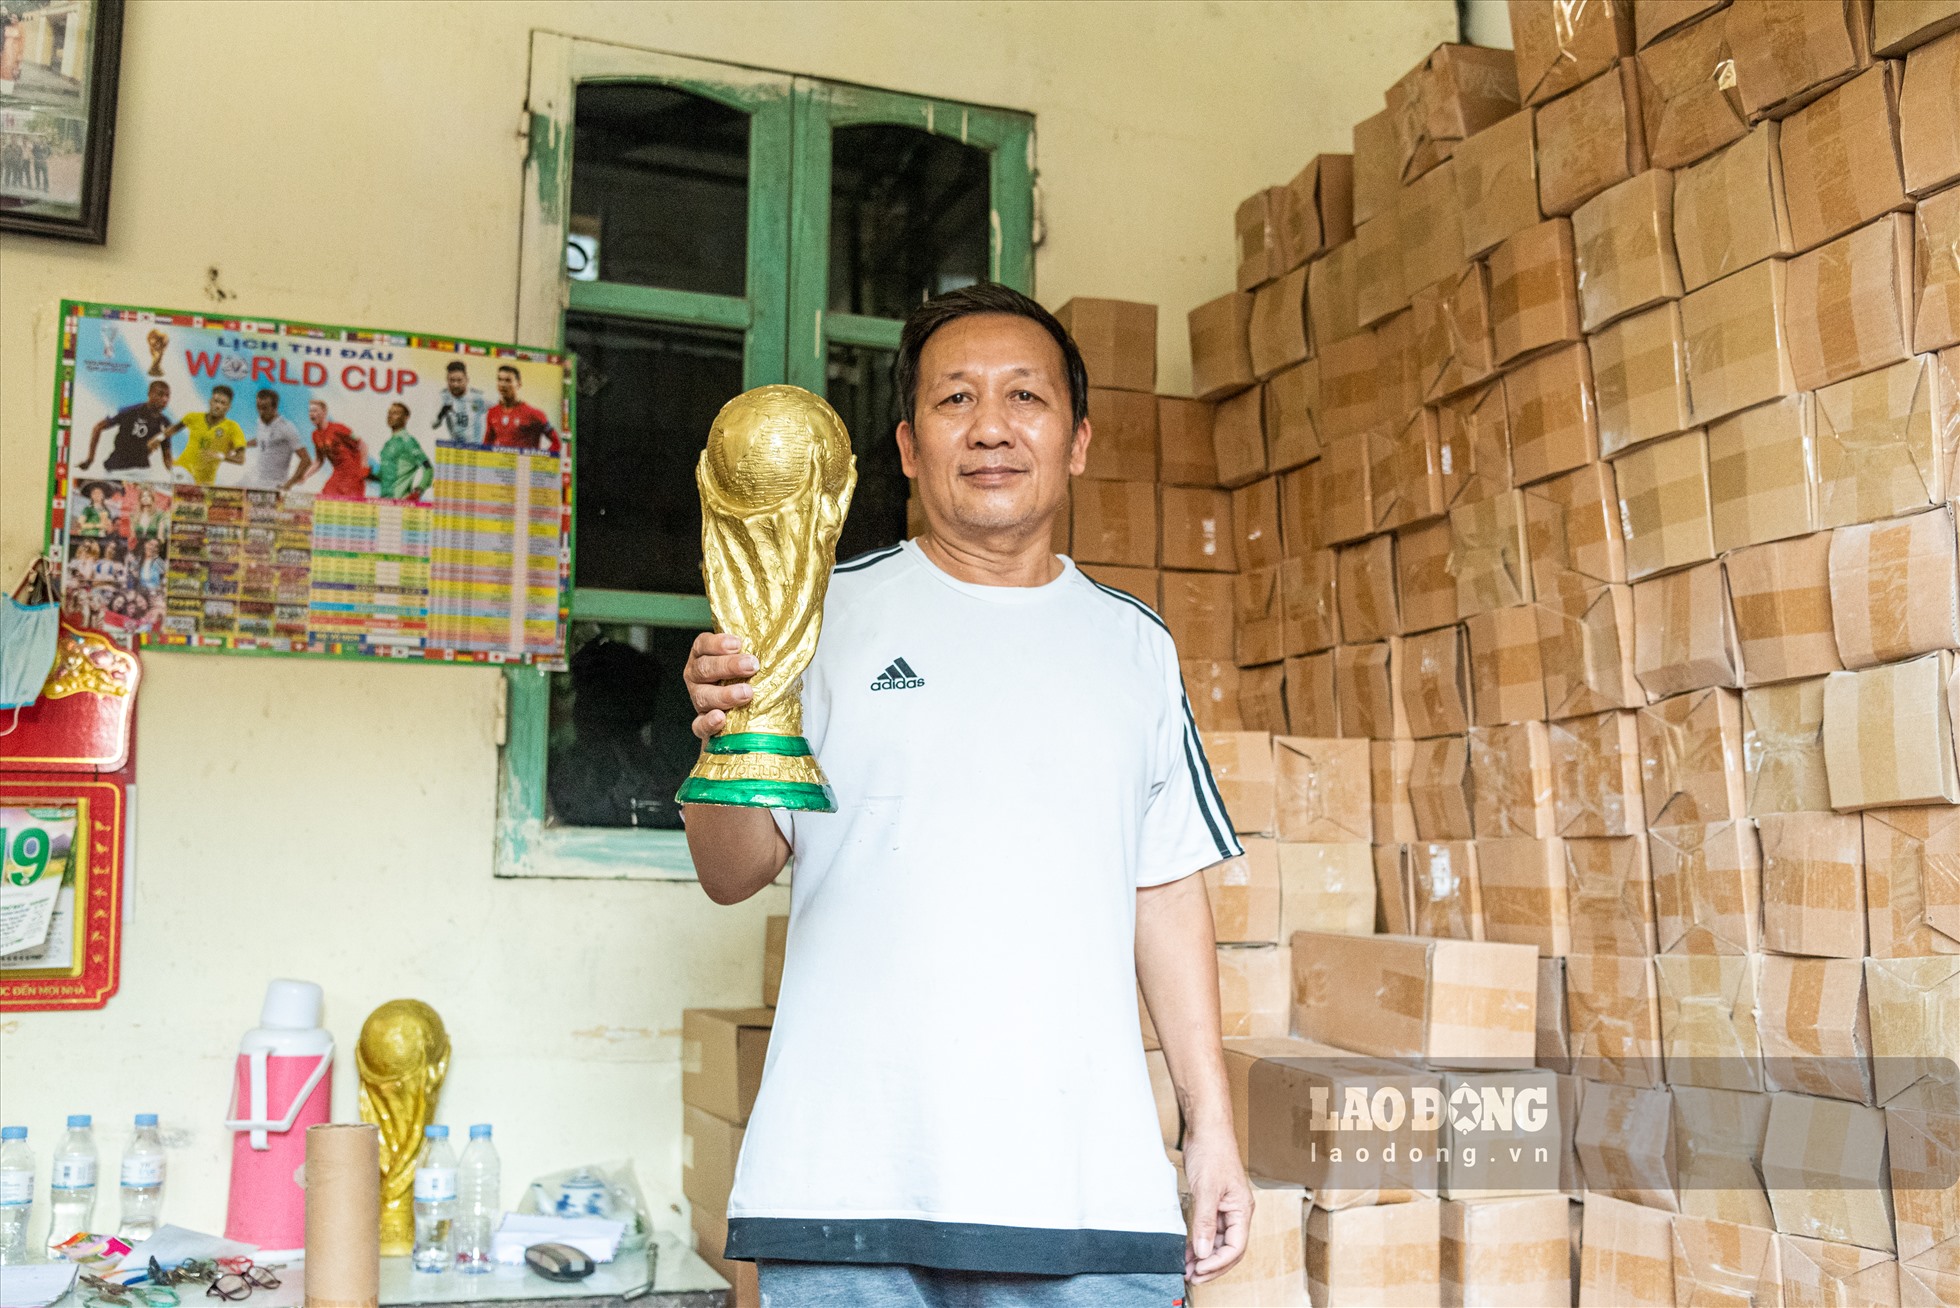 Ông Vương Hồng Nhật cho biết: “Đến thời điểm hiện nay là mùa World Cup thứ 4 tôi sản xuất cúp để cung cấp ra thị trường. Các sản phẩm sau khi hoàn thiện và đóng gói cẩn thận sẽ được phân phối tới nhiều tỉnh, thành trên cả nước.”